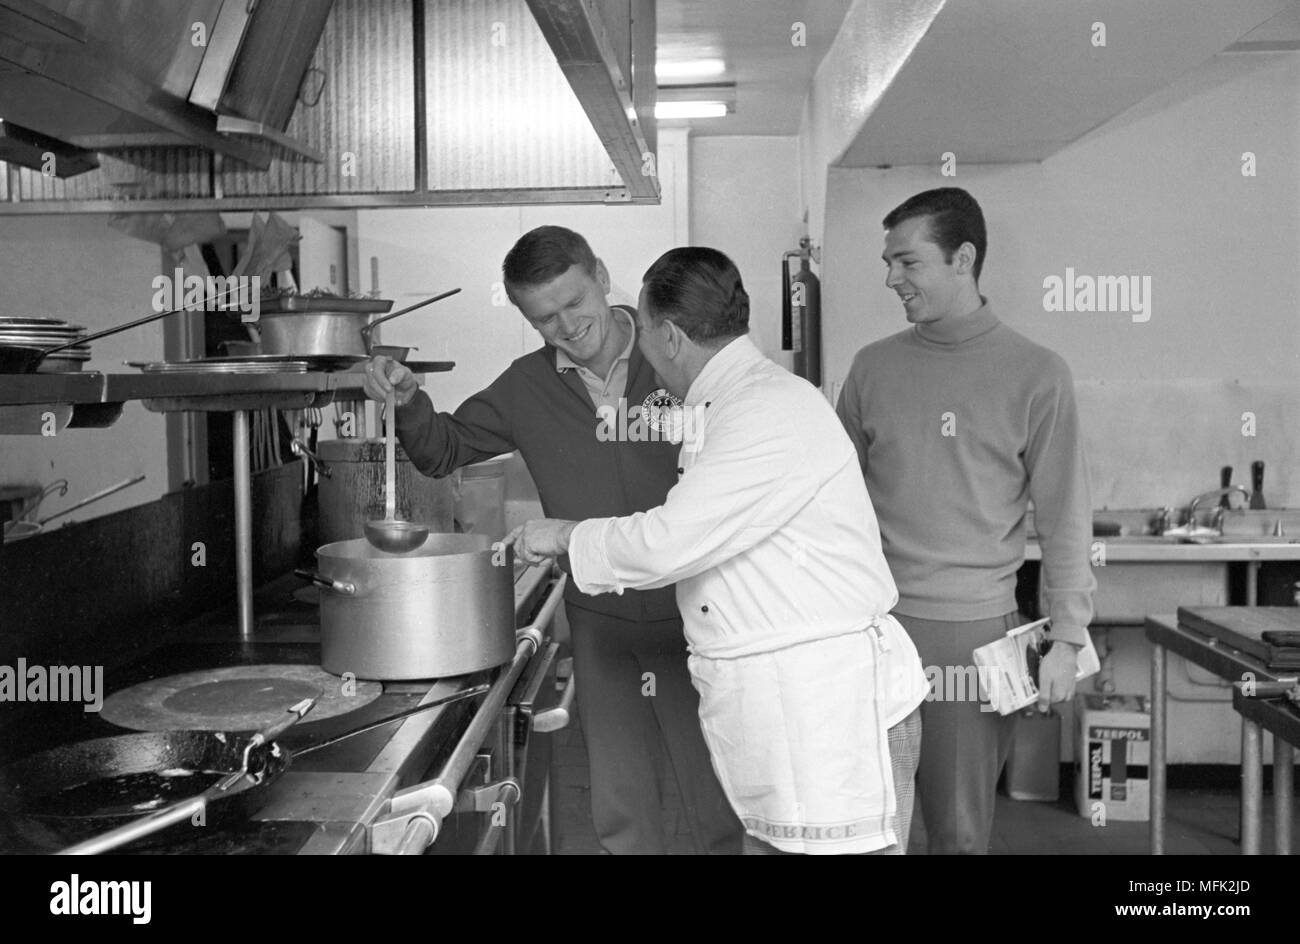 Coupe du Monde de Football 1966 - joueurs allemands Sepp Maier (L) et Franz Beckenbauer (R) visiter la cuisine de l'hôtel, le 18 juillet 1966. Dans le monde d'utilisation | Banque D'Images